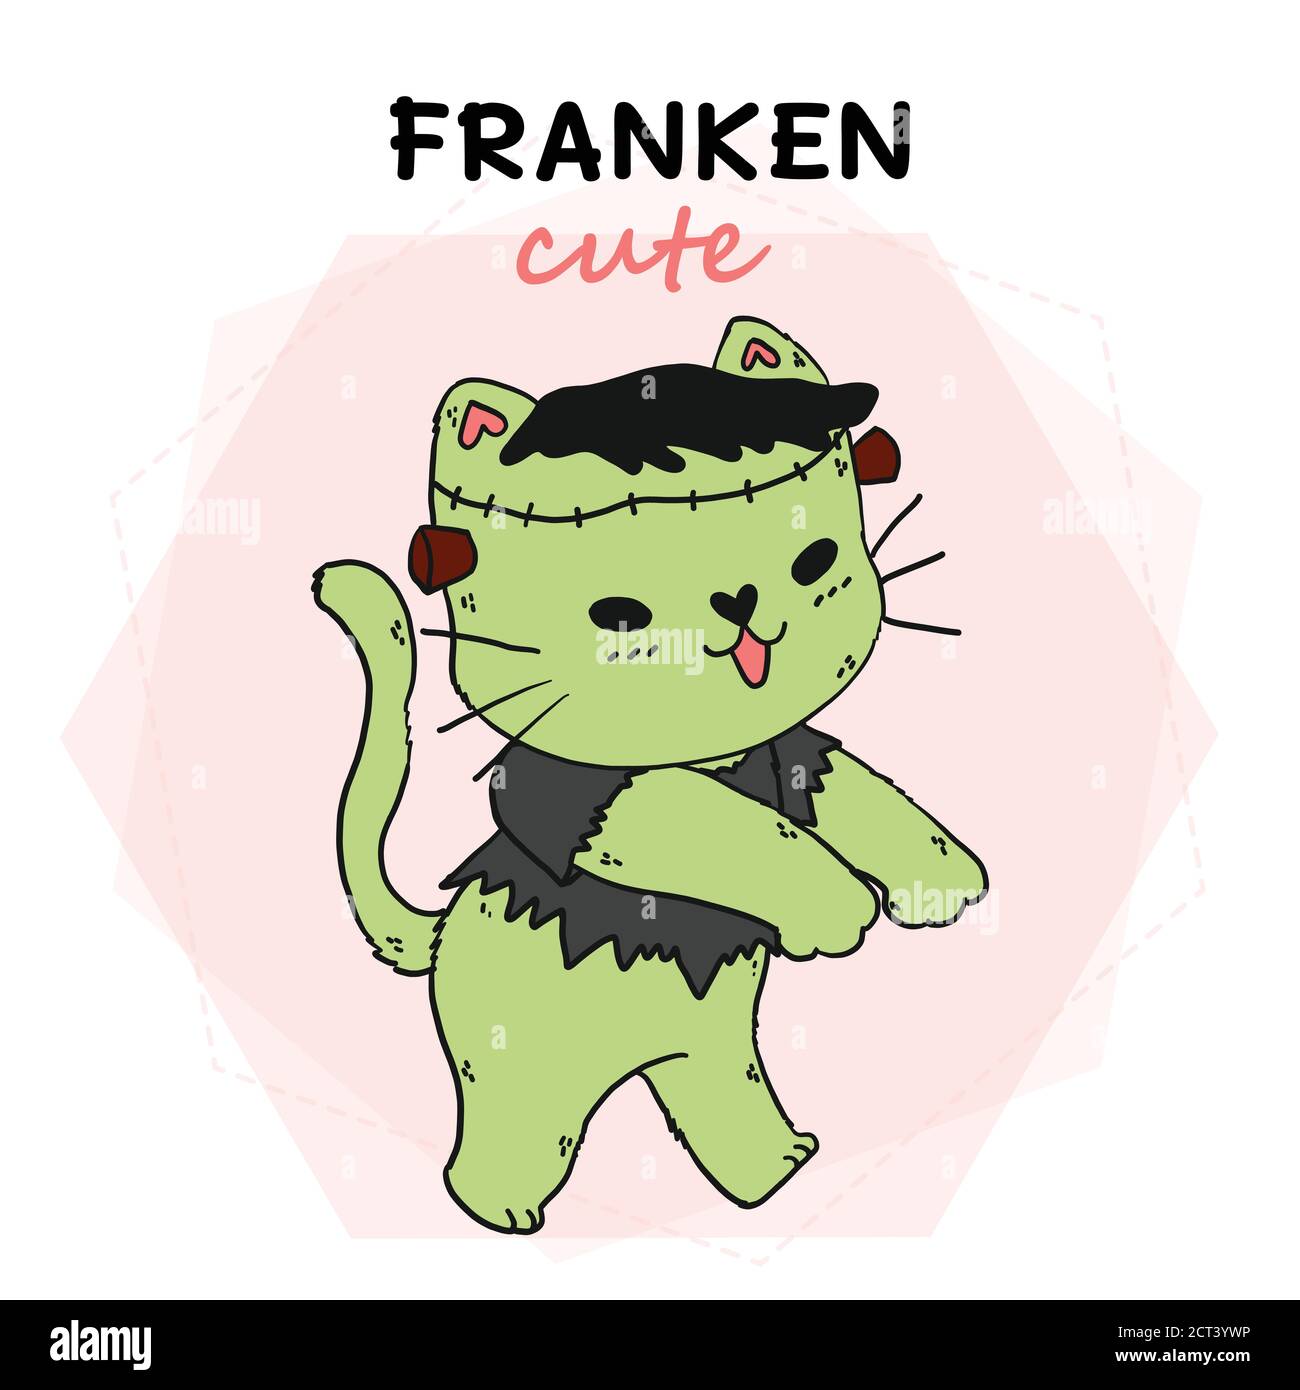 Mignon chat vert Frankenstein drôle Halloween, franken mignon, idée pour sublimation, imprimé, carte de voeux, autocollant Illustration de Vecteur